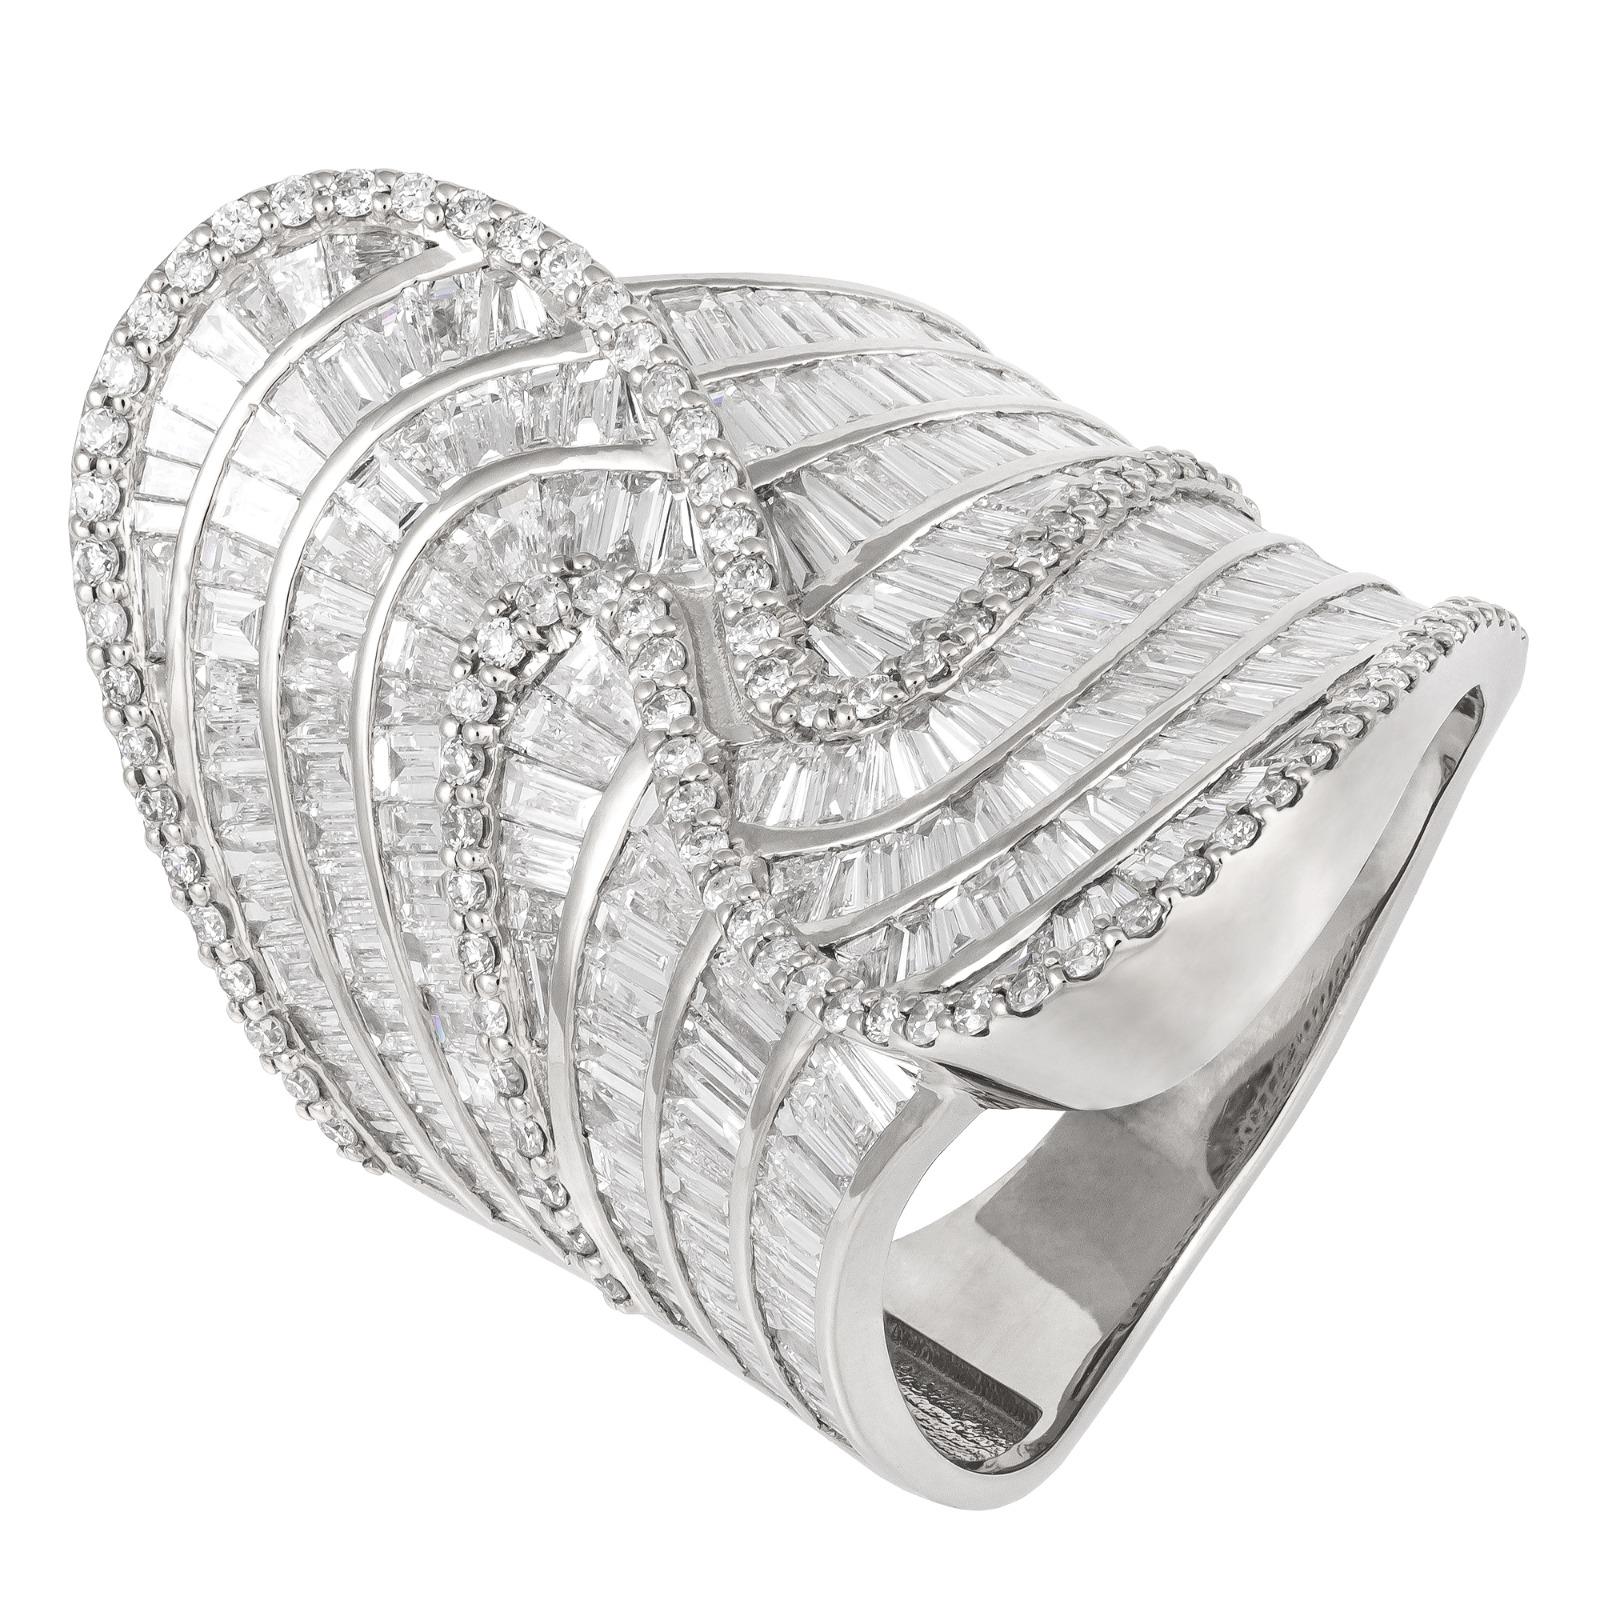 For Sale:  Stunning White 18K Gold White Diamond Ring for Her 3